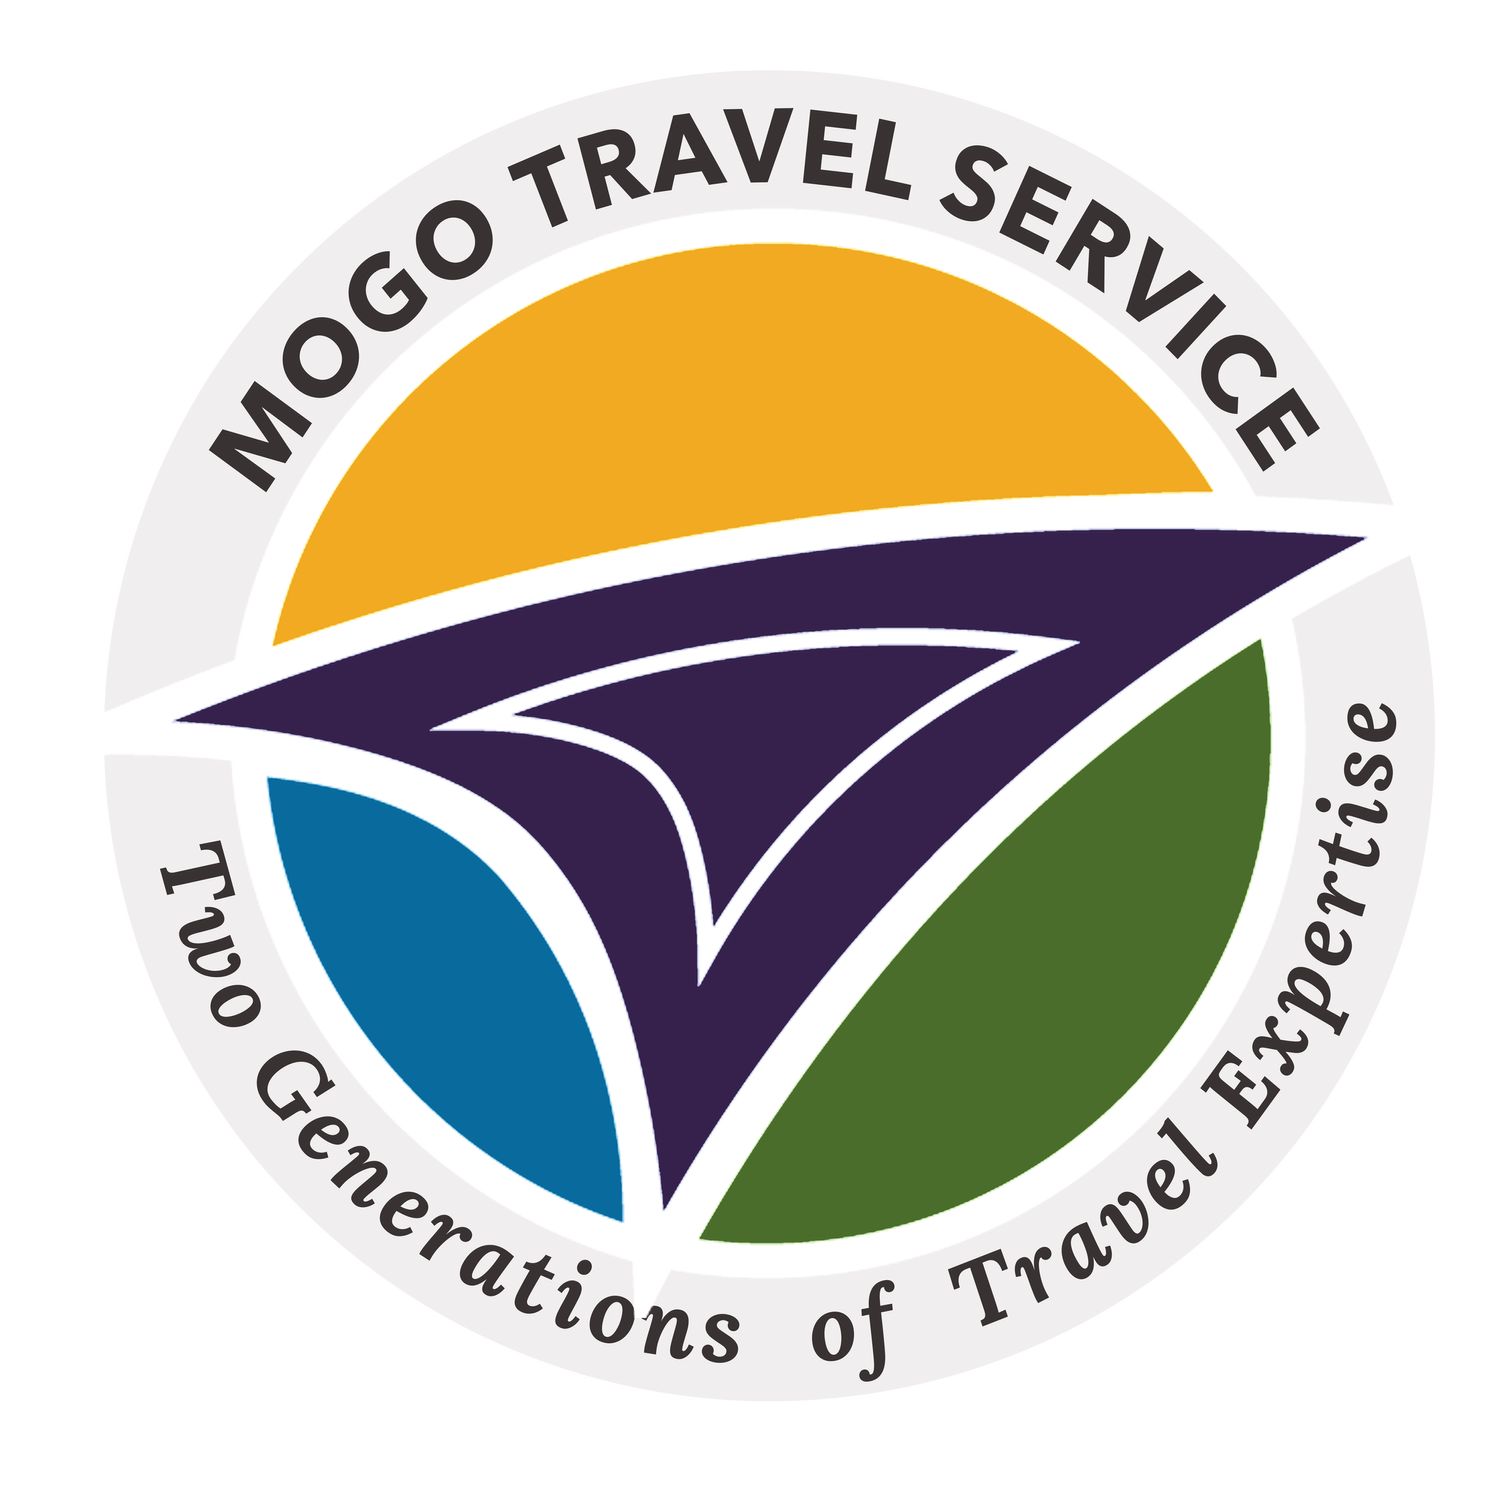 MoGo Travel Service 